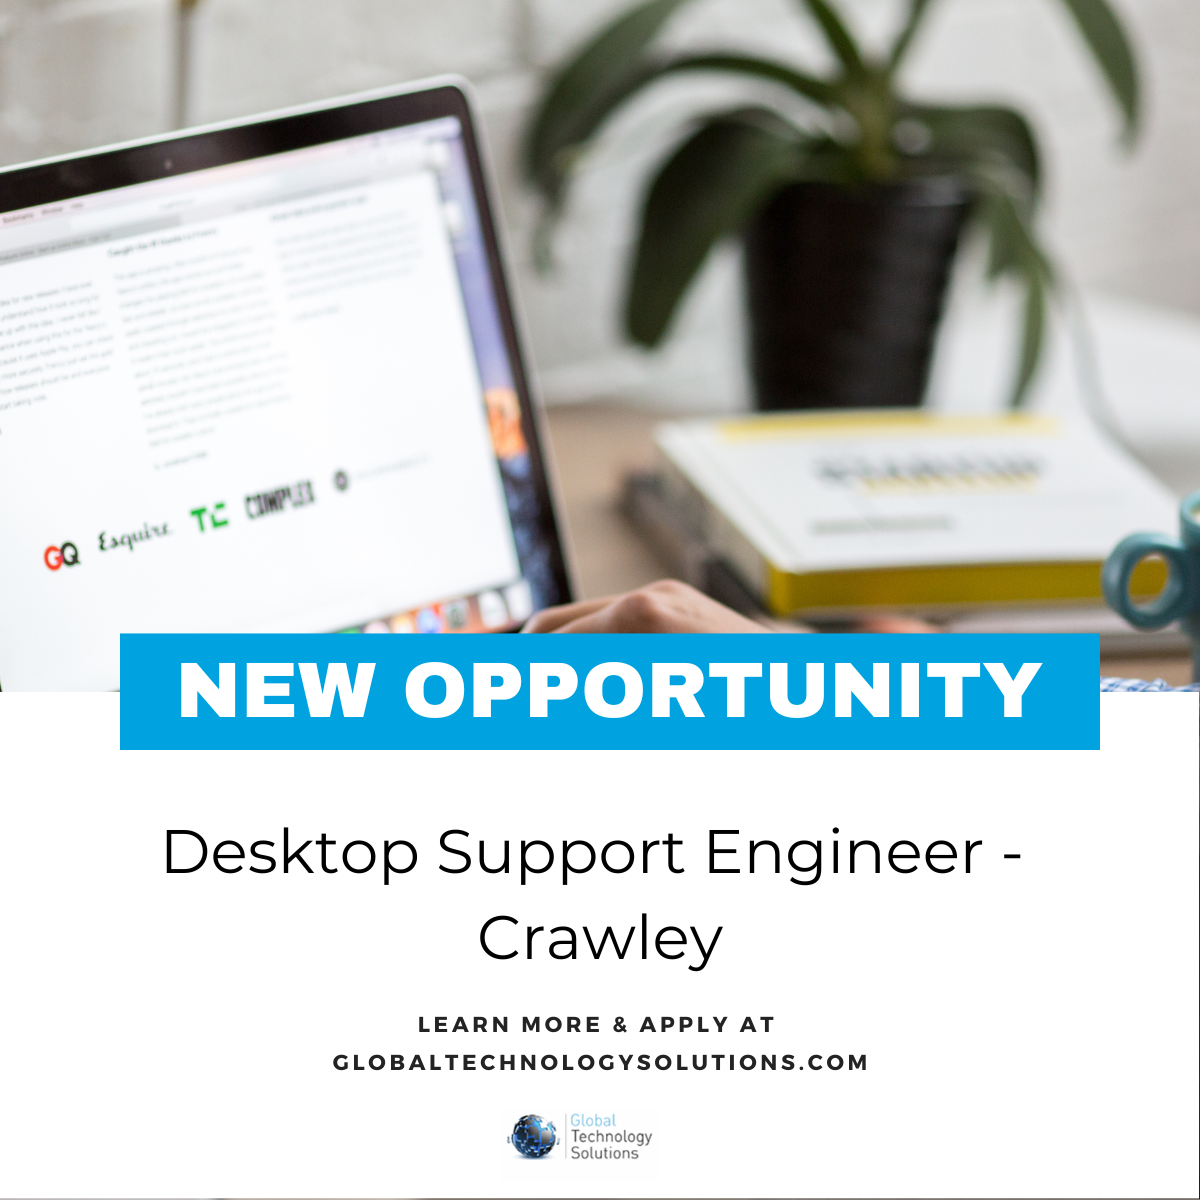 Crawley Desktop Support Engineer